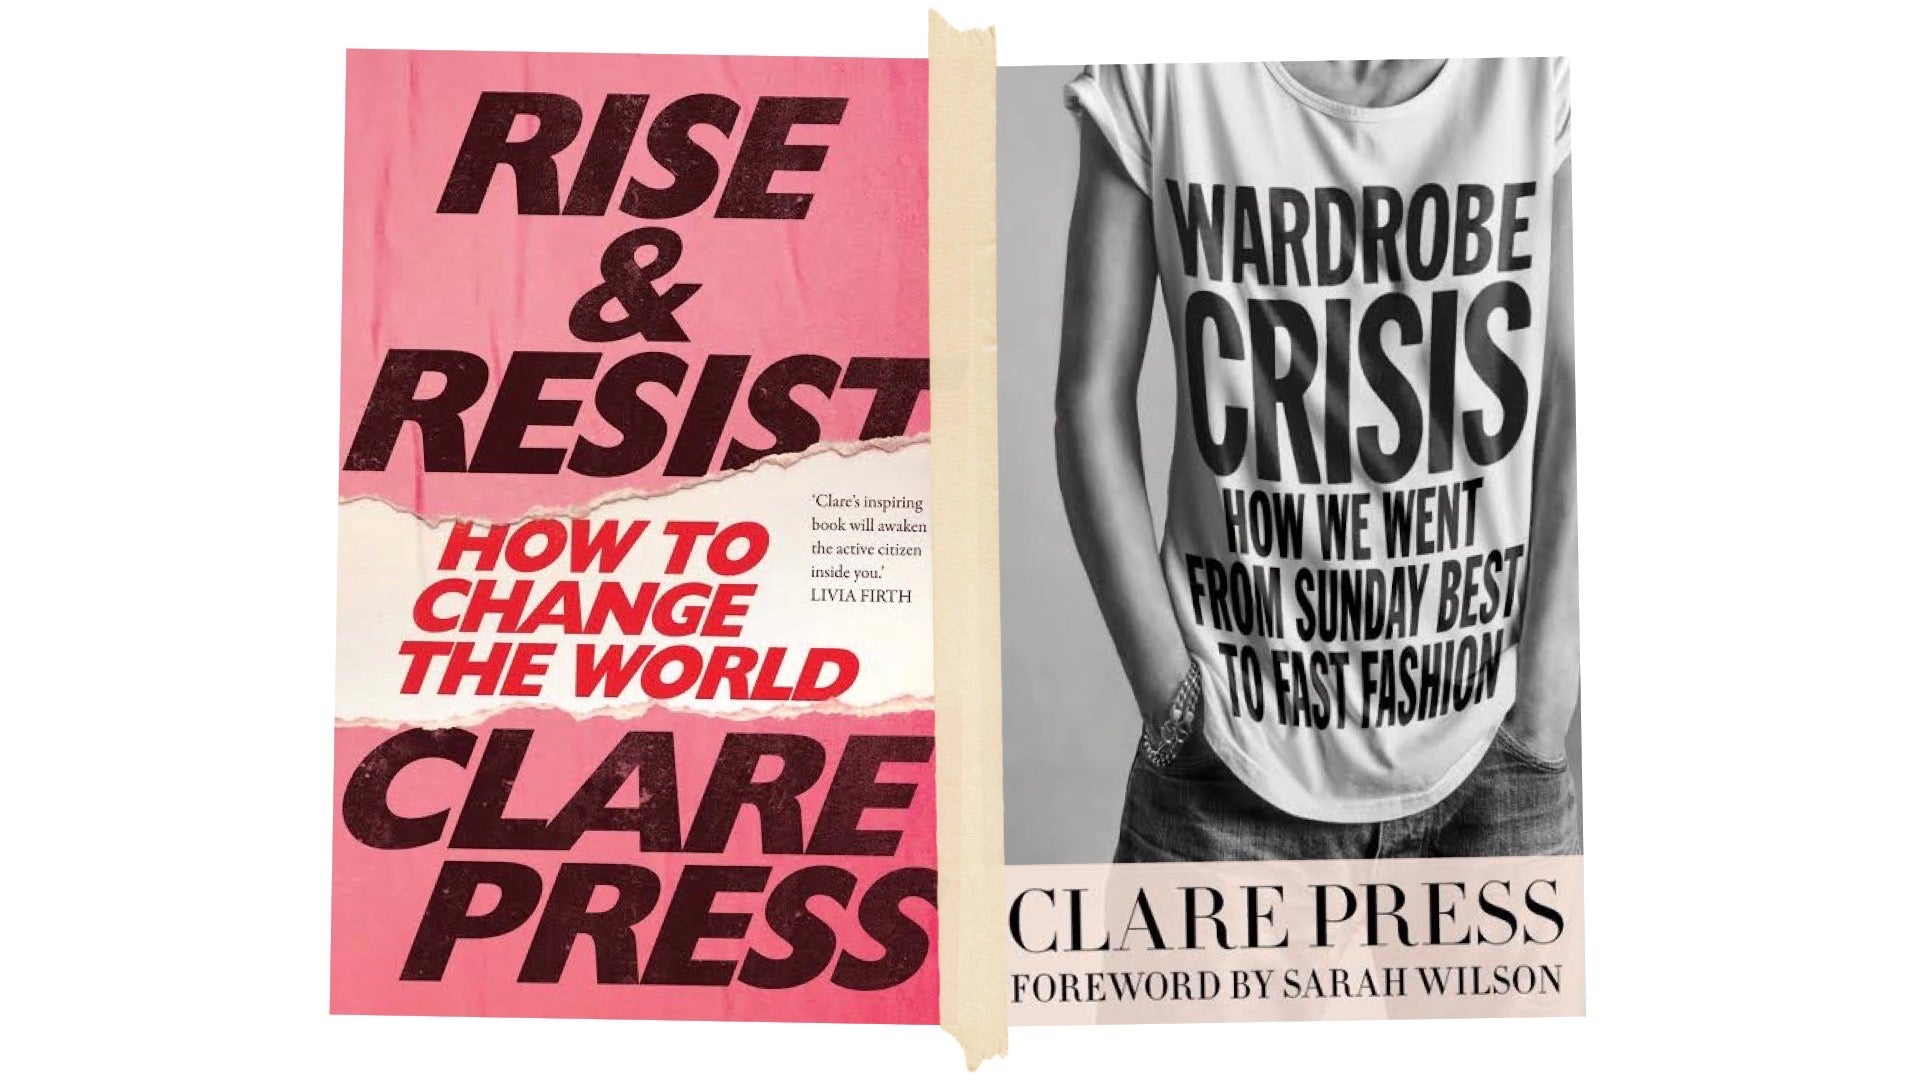 Clare Press books